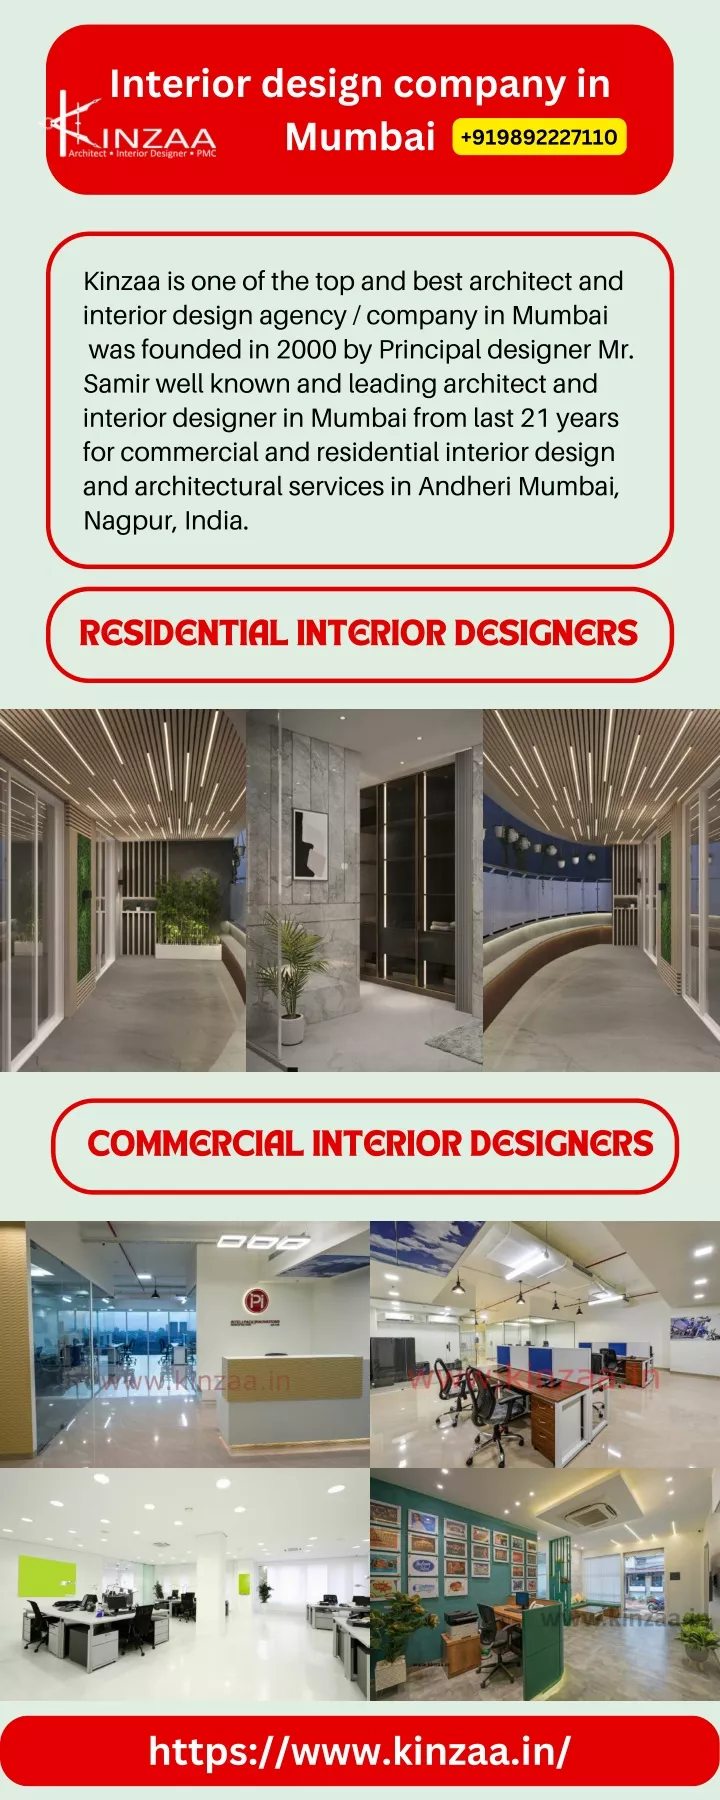 interior design company in mumbai